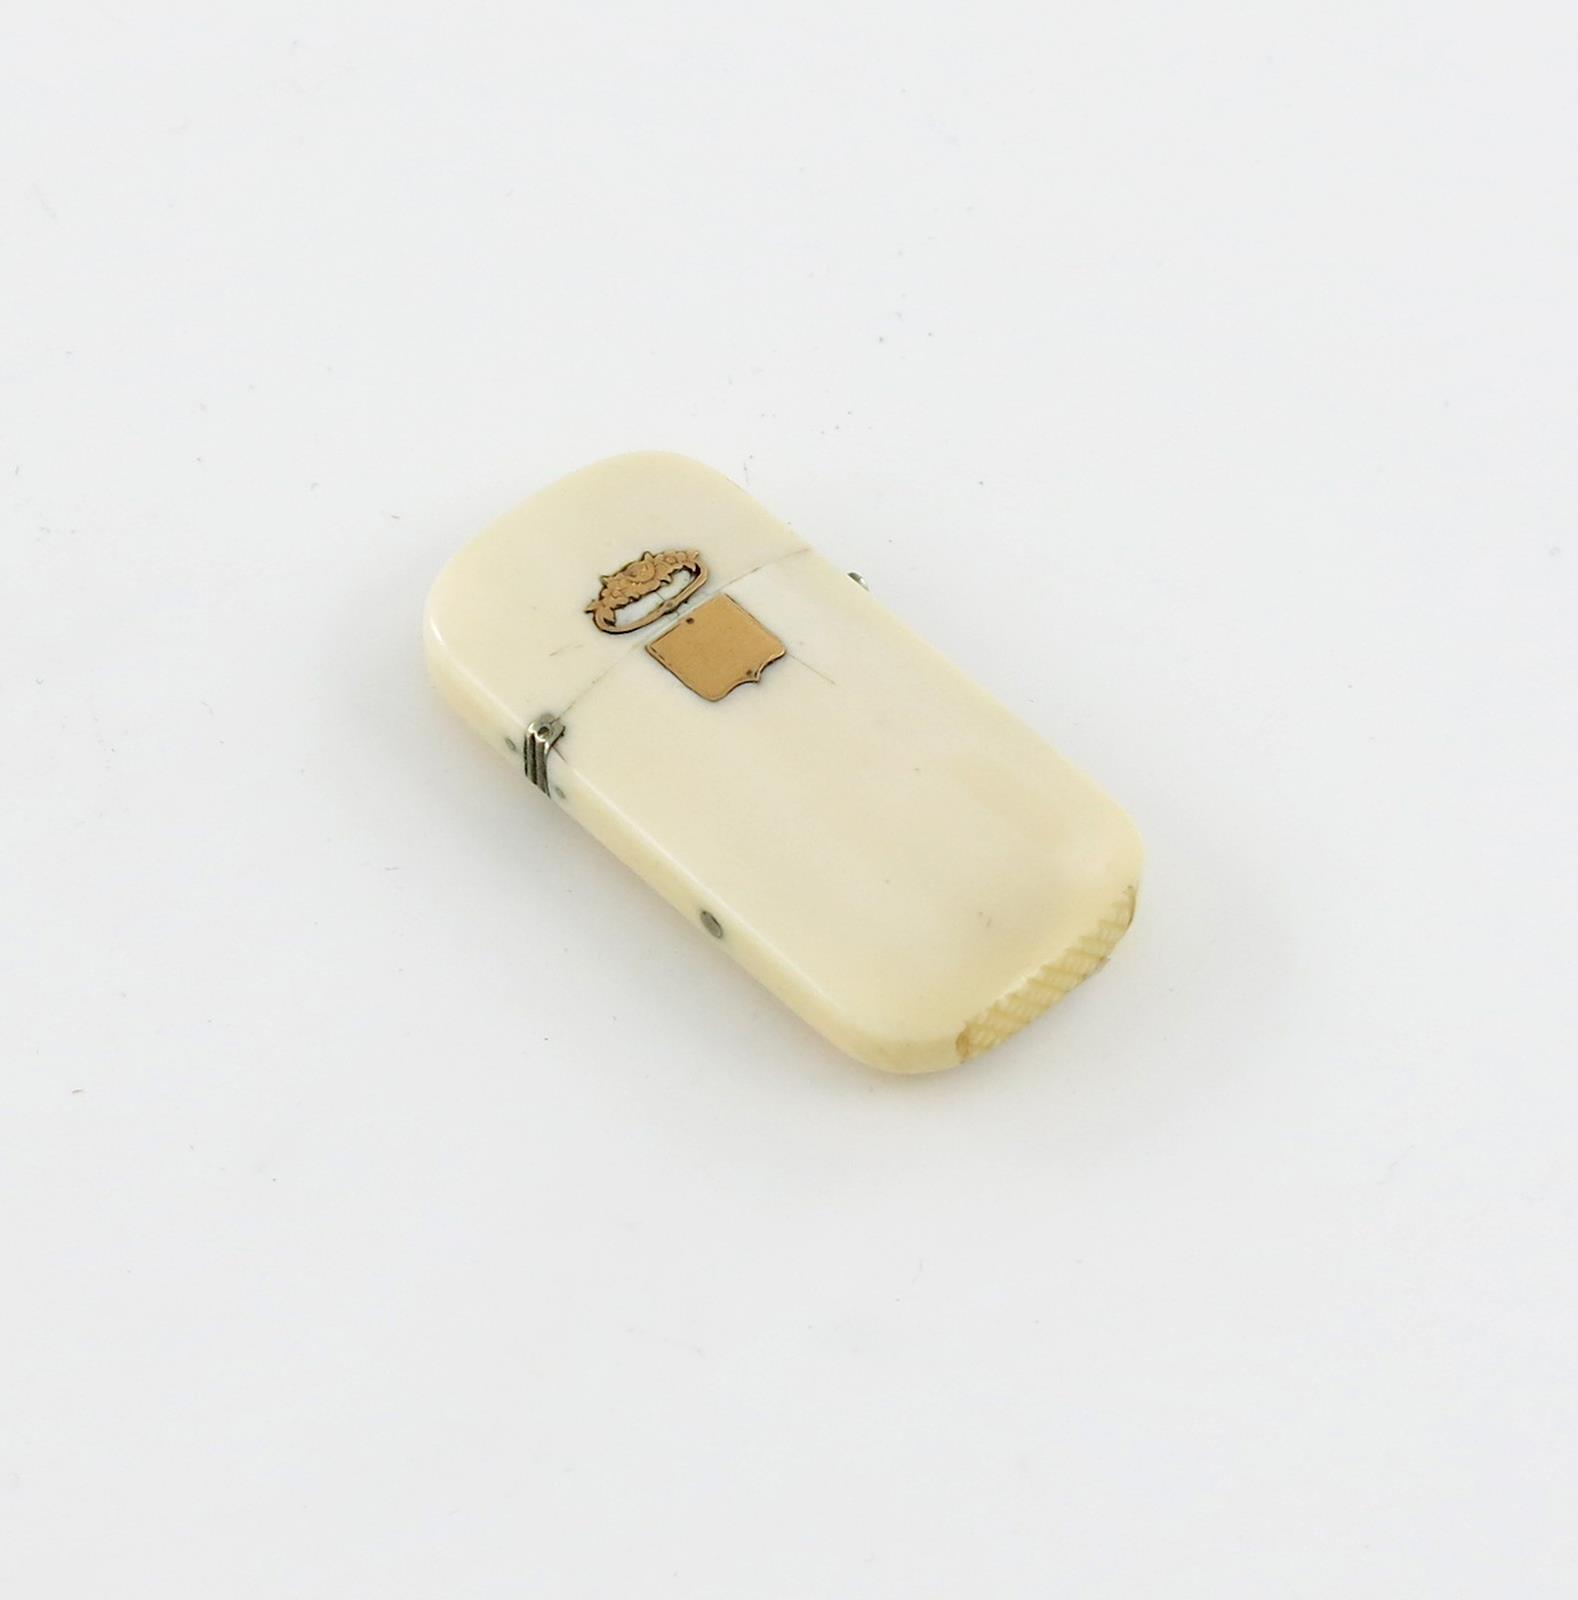 λ A late 19th century ivory vesta case, with a base metal hinge and clasp, applied with a gold